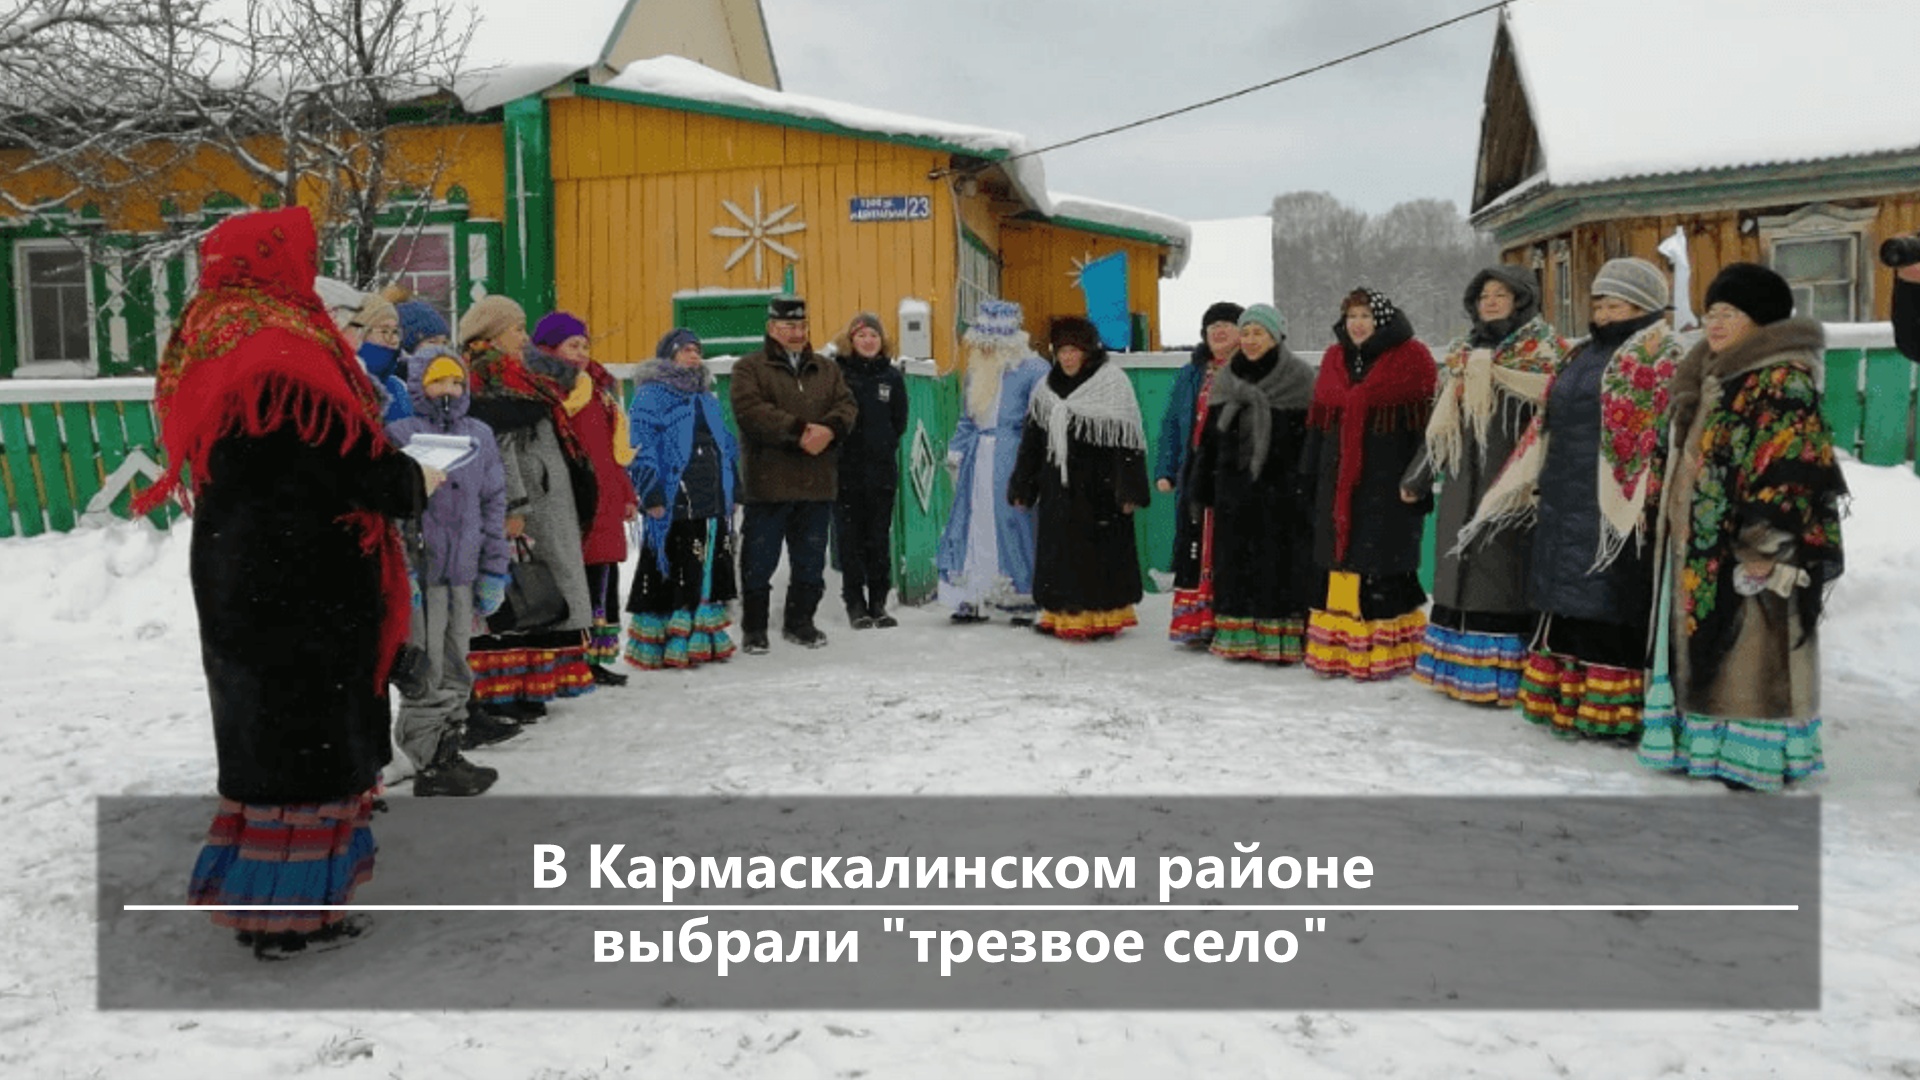 Новости центра Башкирии за 25 декабря